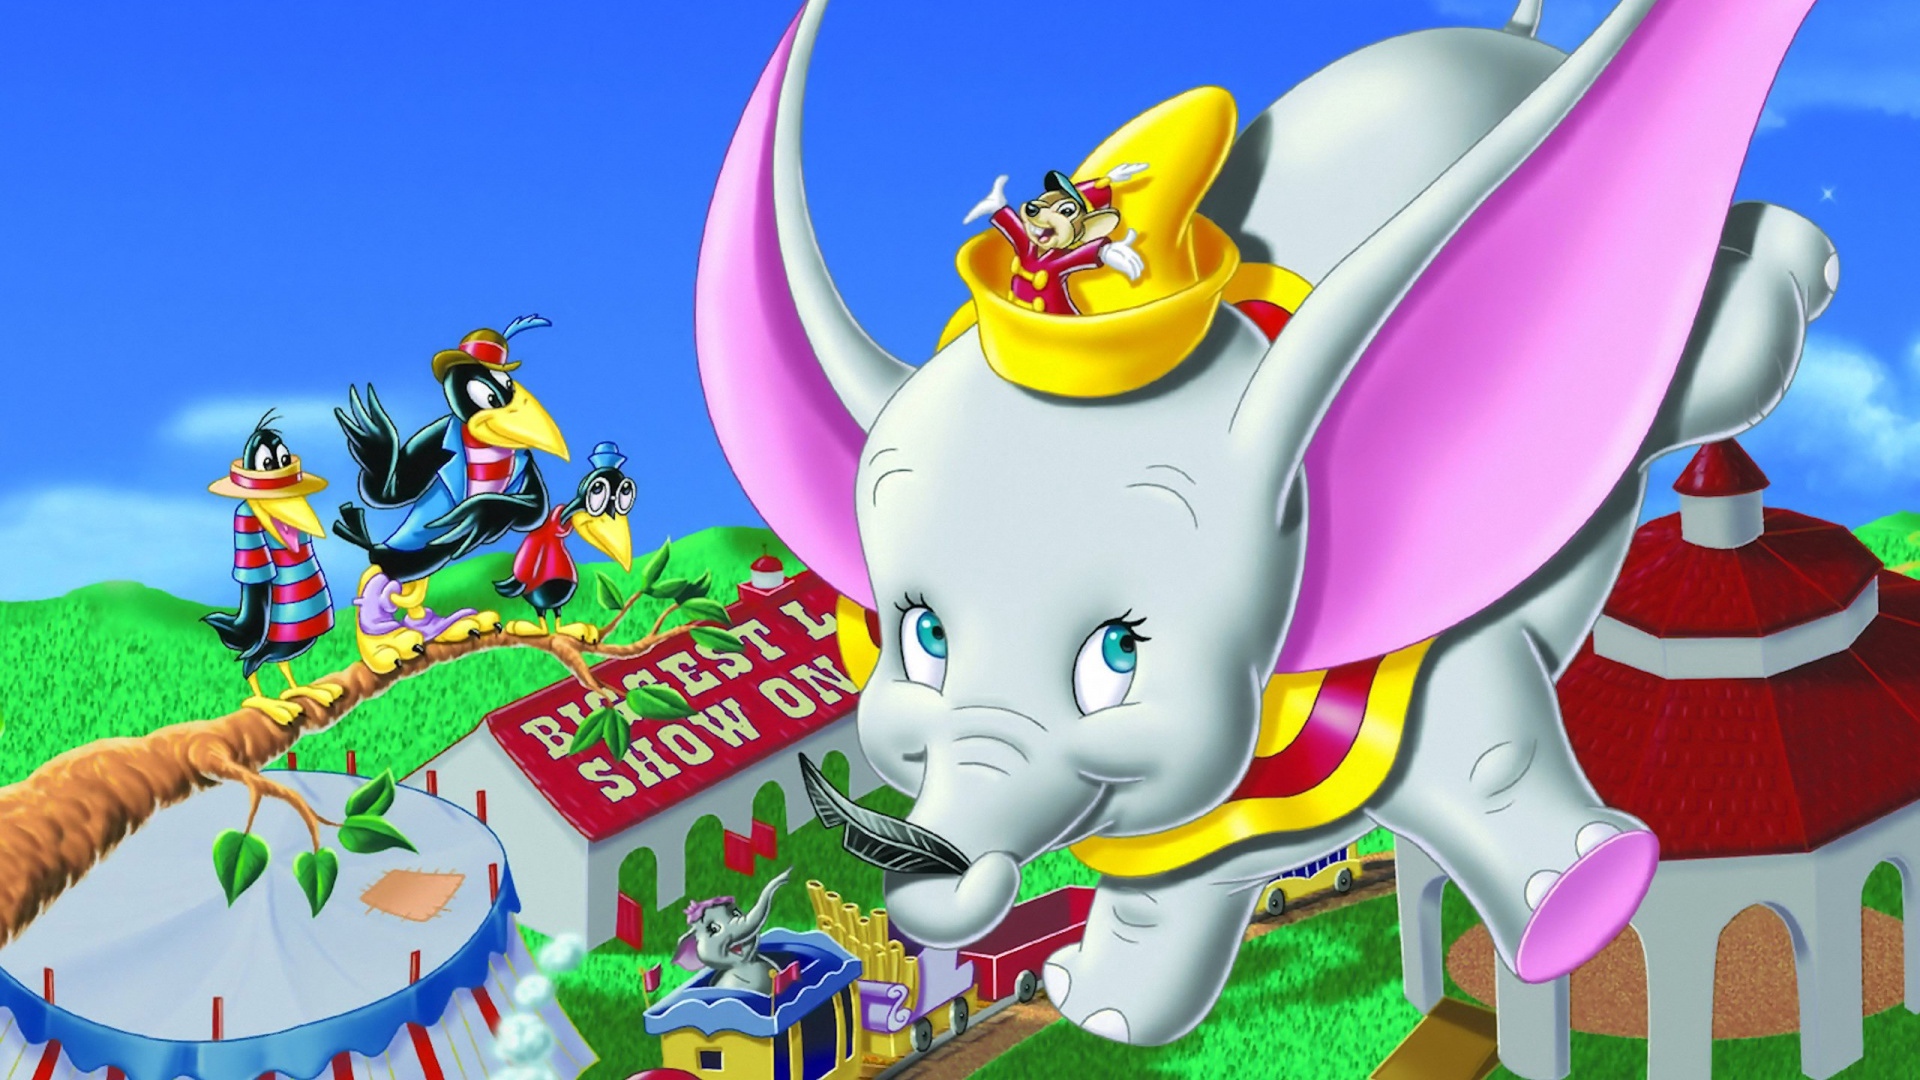 download wallpaper: Dumbo het vliegende olifantje wallpaper